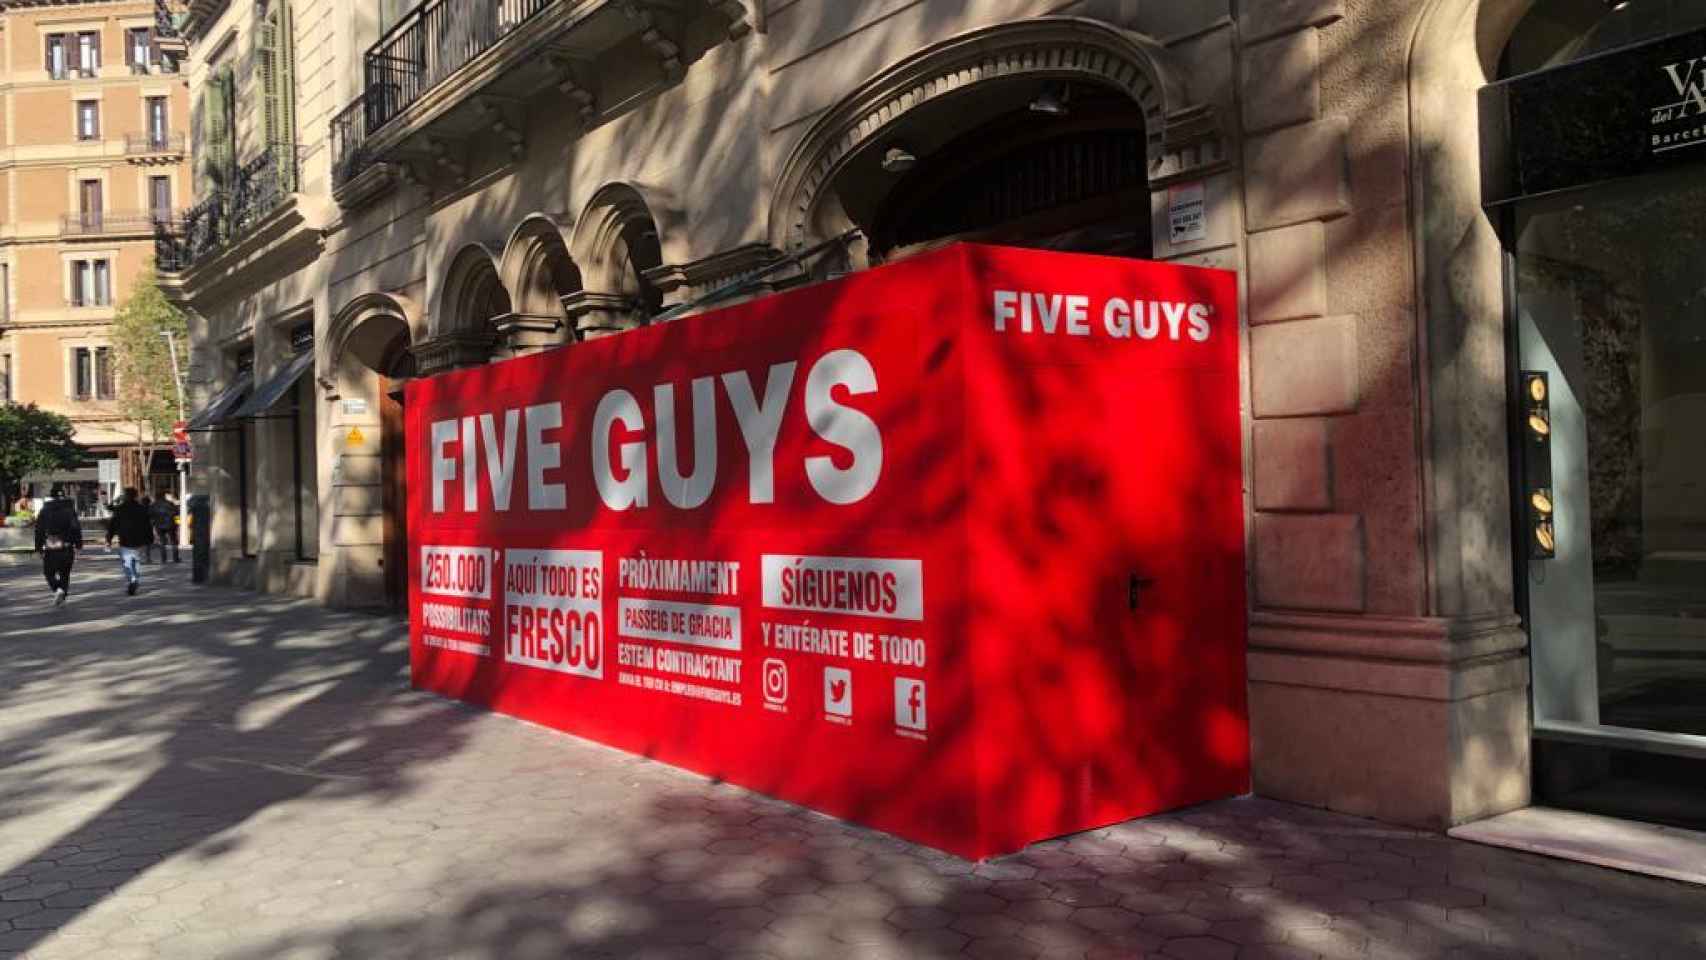 Exterior del futuro comercio de Five Guys en paseo de Gràcia / CEDIDA